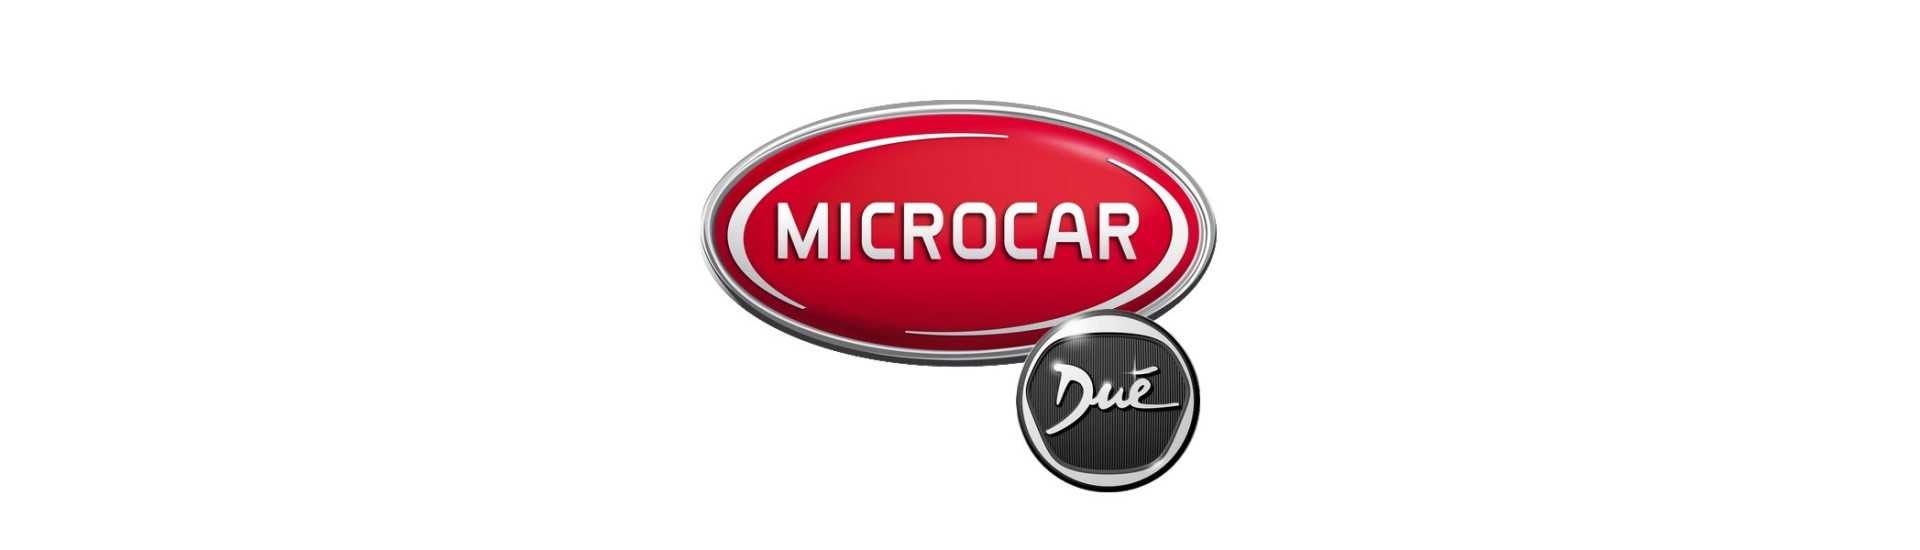 Logo et adhésif au meilleur prix pour voiture sans permis Microcar Dué